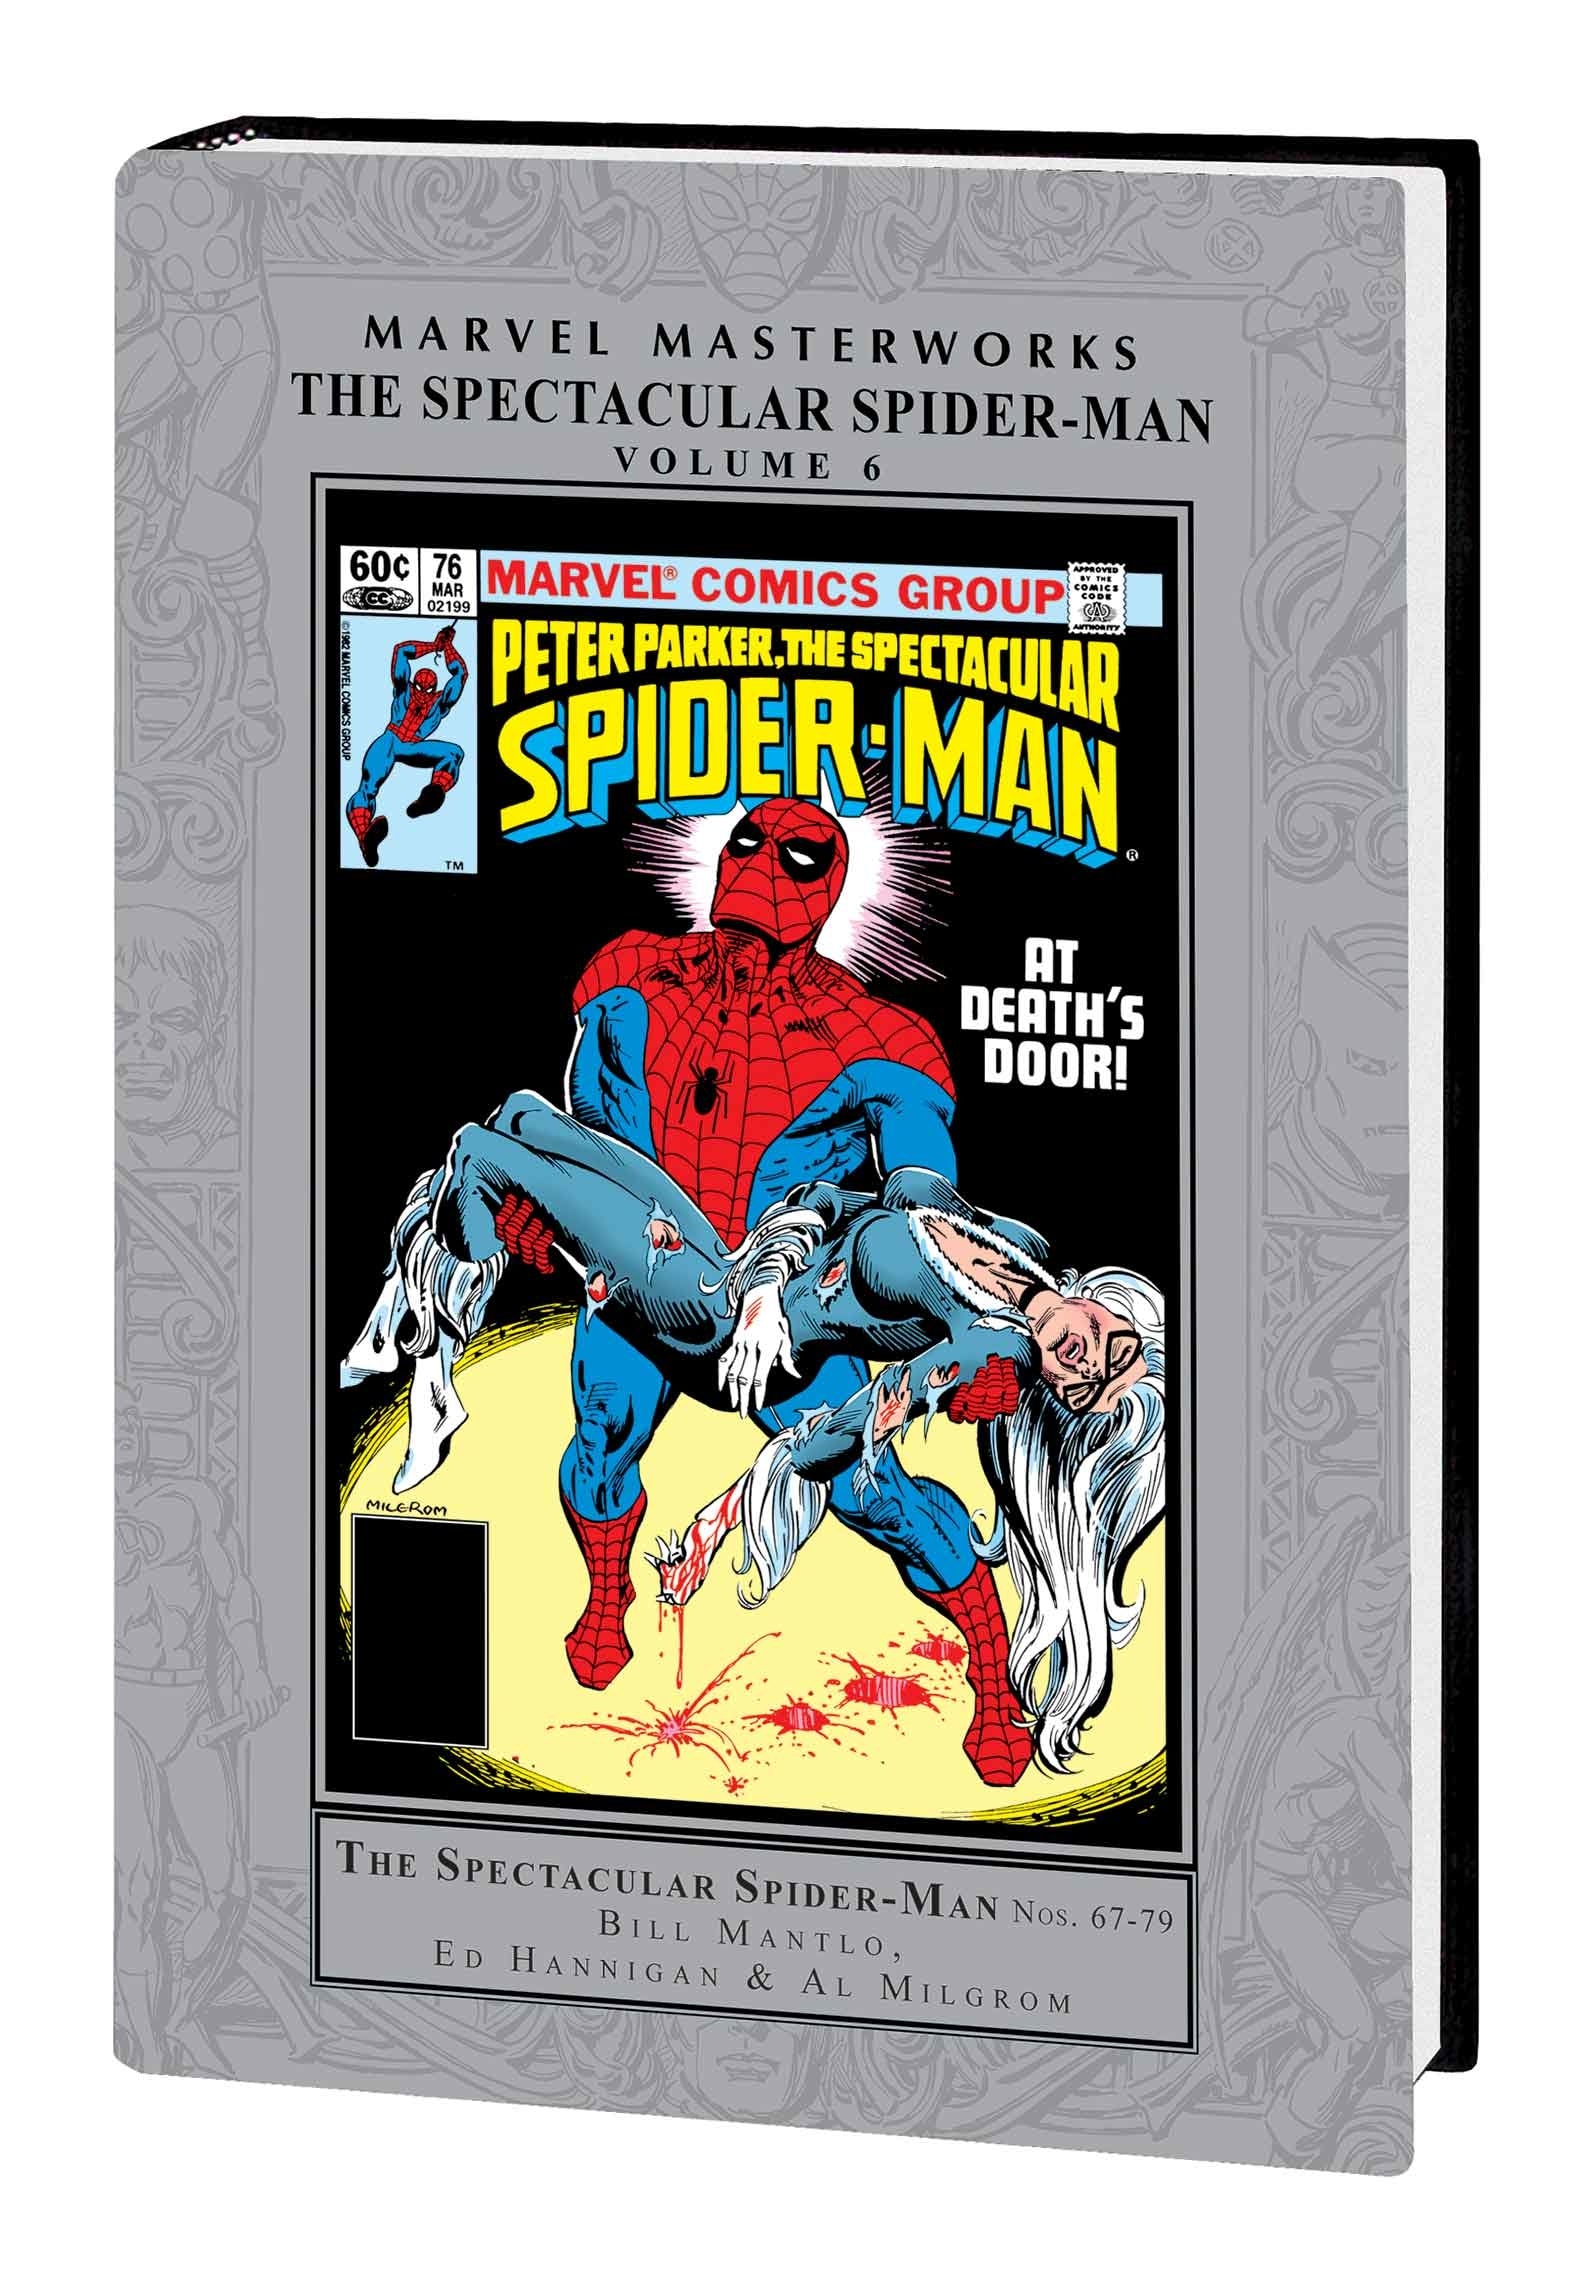 Spider-Mans bil och Doc Ock 10789 | Spider-Man | Official LEGO® Shop SE